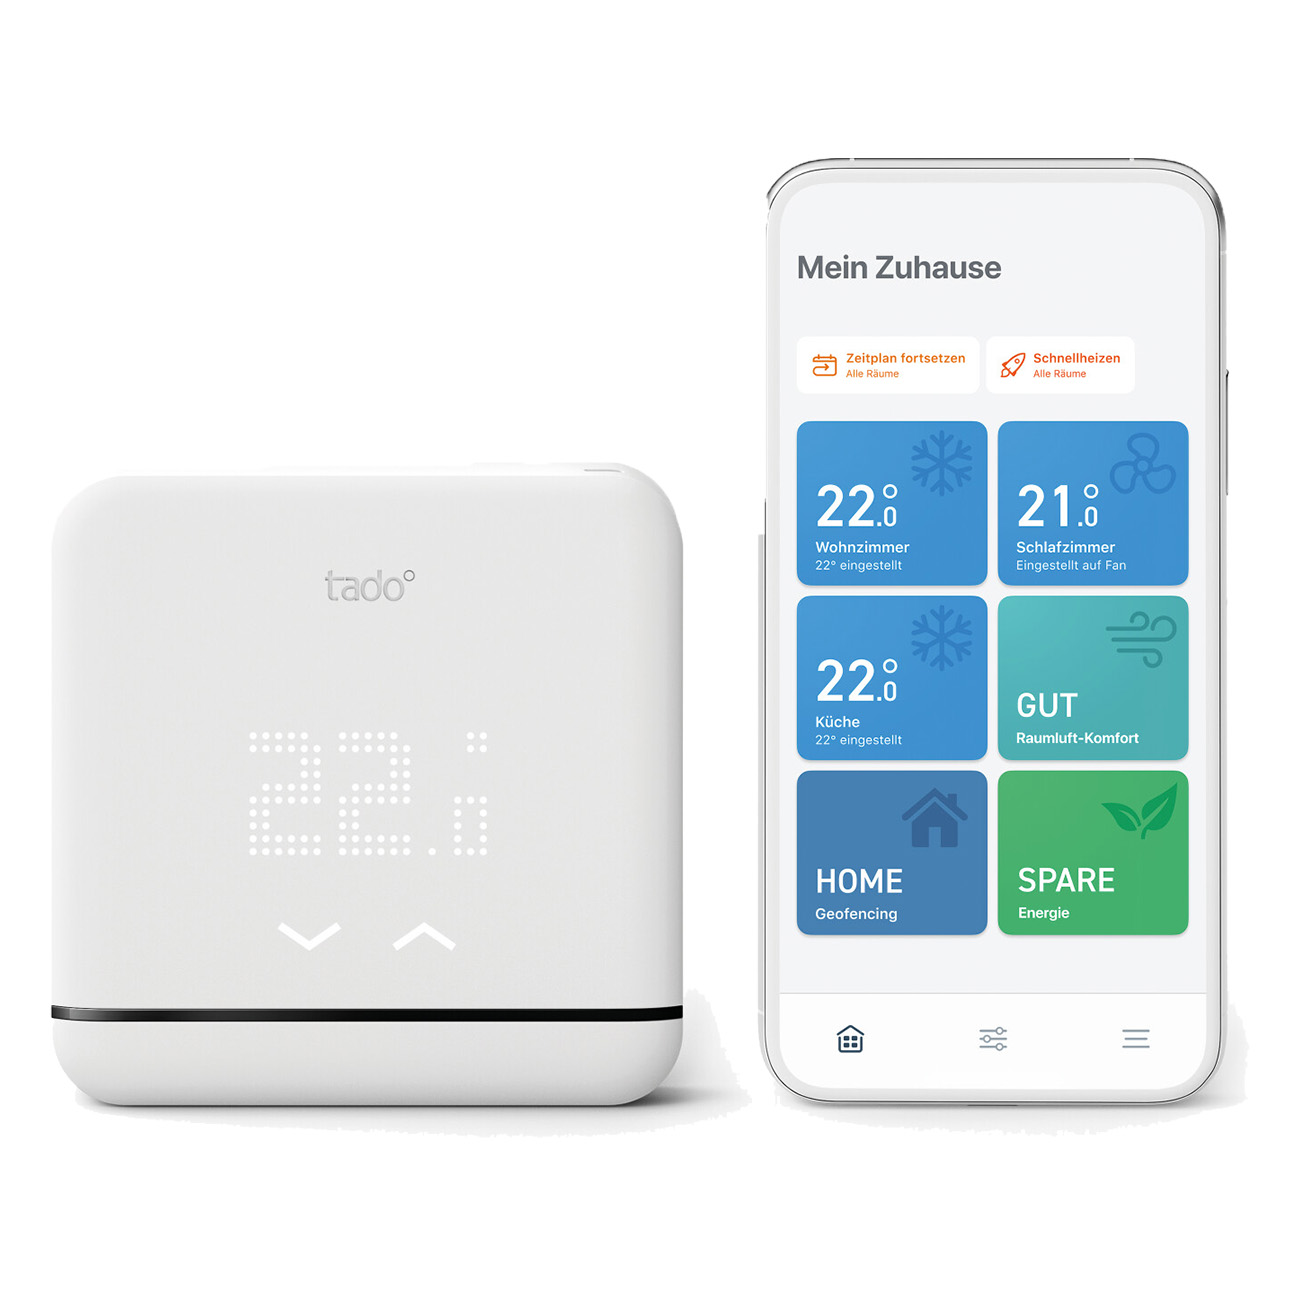 Tado Add-on - Wireless Temperature Sensor | Zusatzprodukt f?r tado? Smarte Heizk?rper-Thermostate | Misst die Temperatur | Kein Bohren erforderlich von tado